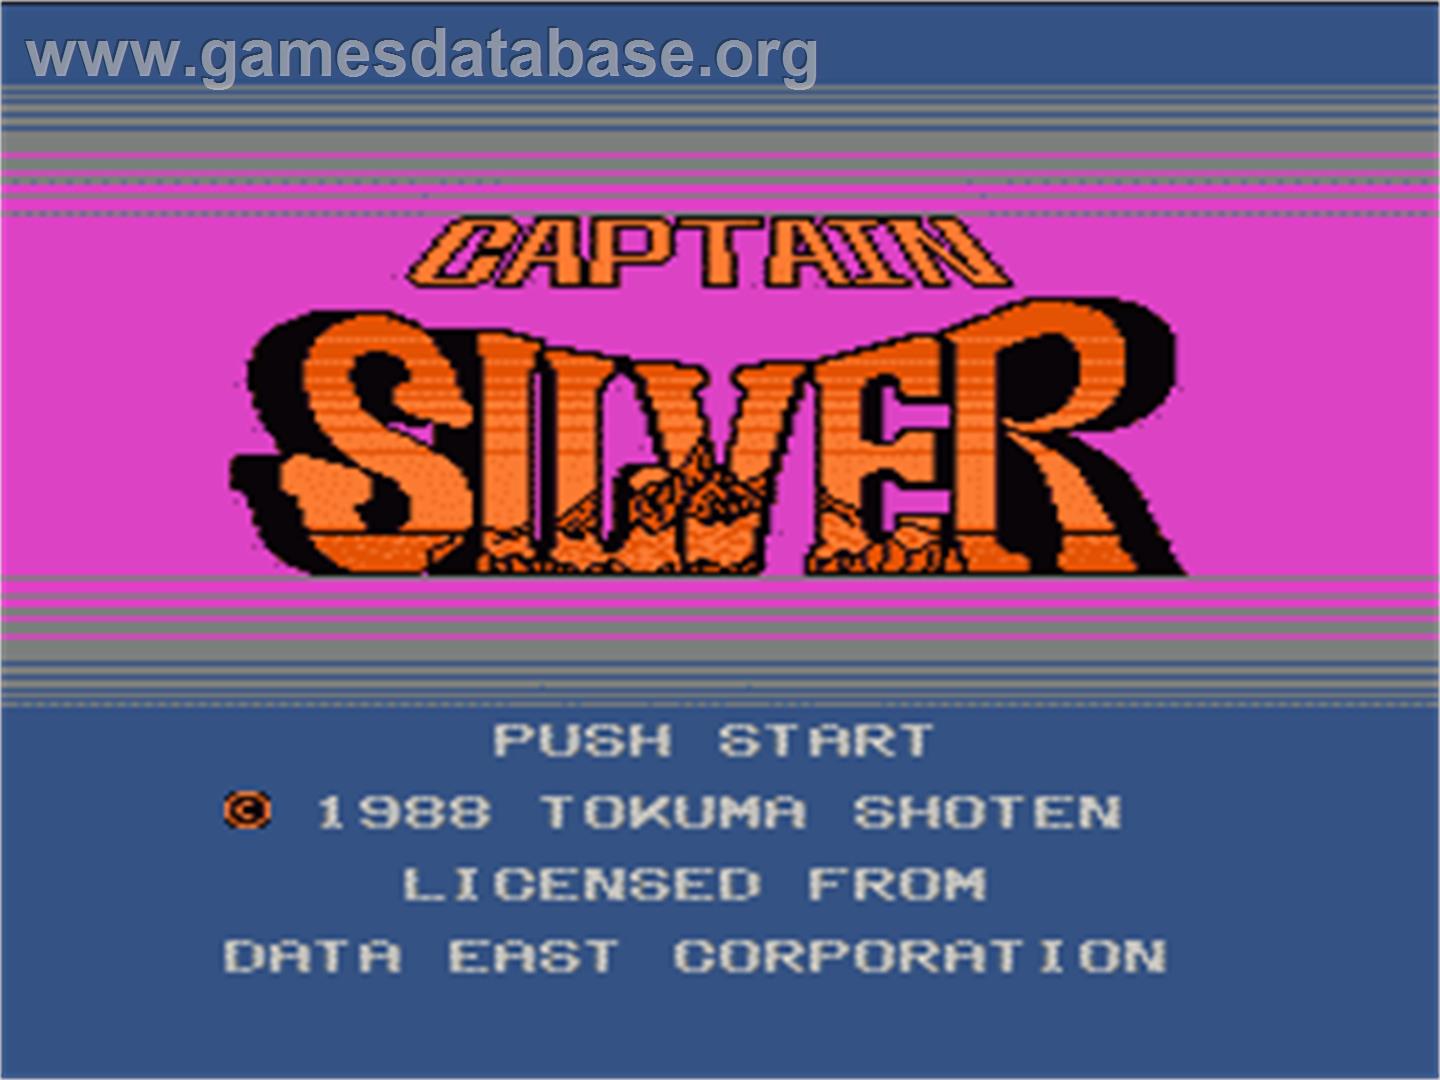 Captain Silver - Nintendo NES - Artwork - Title Screen